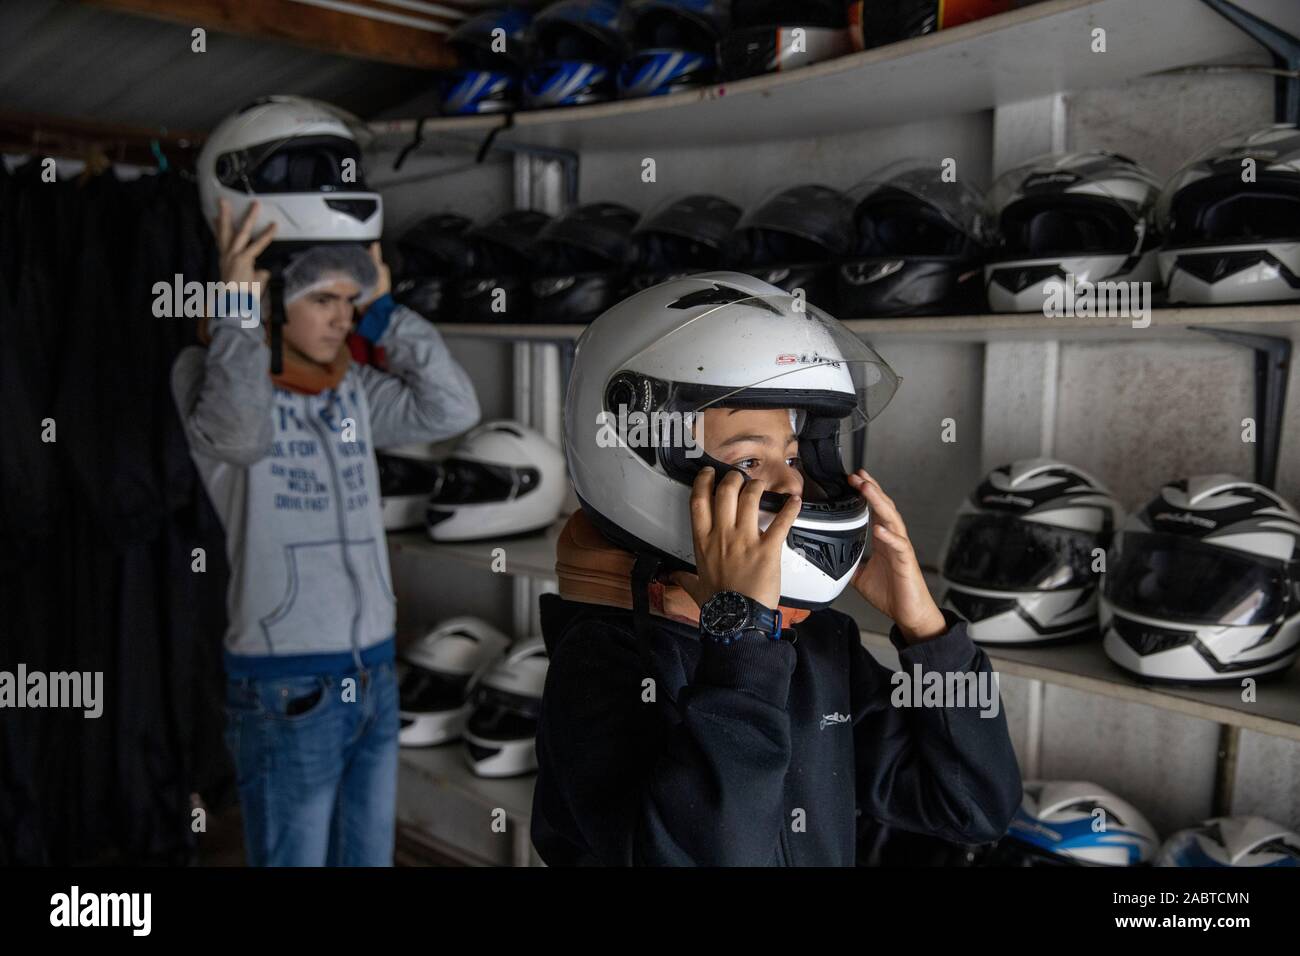 Mettre sur le casque à l'adolescent avant de go-karts. Cabourg, France. Banque D'Images